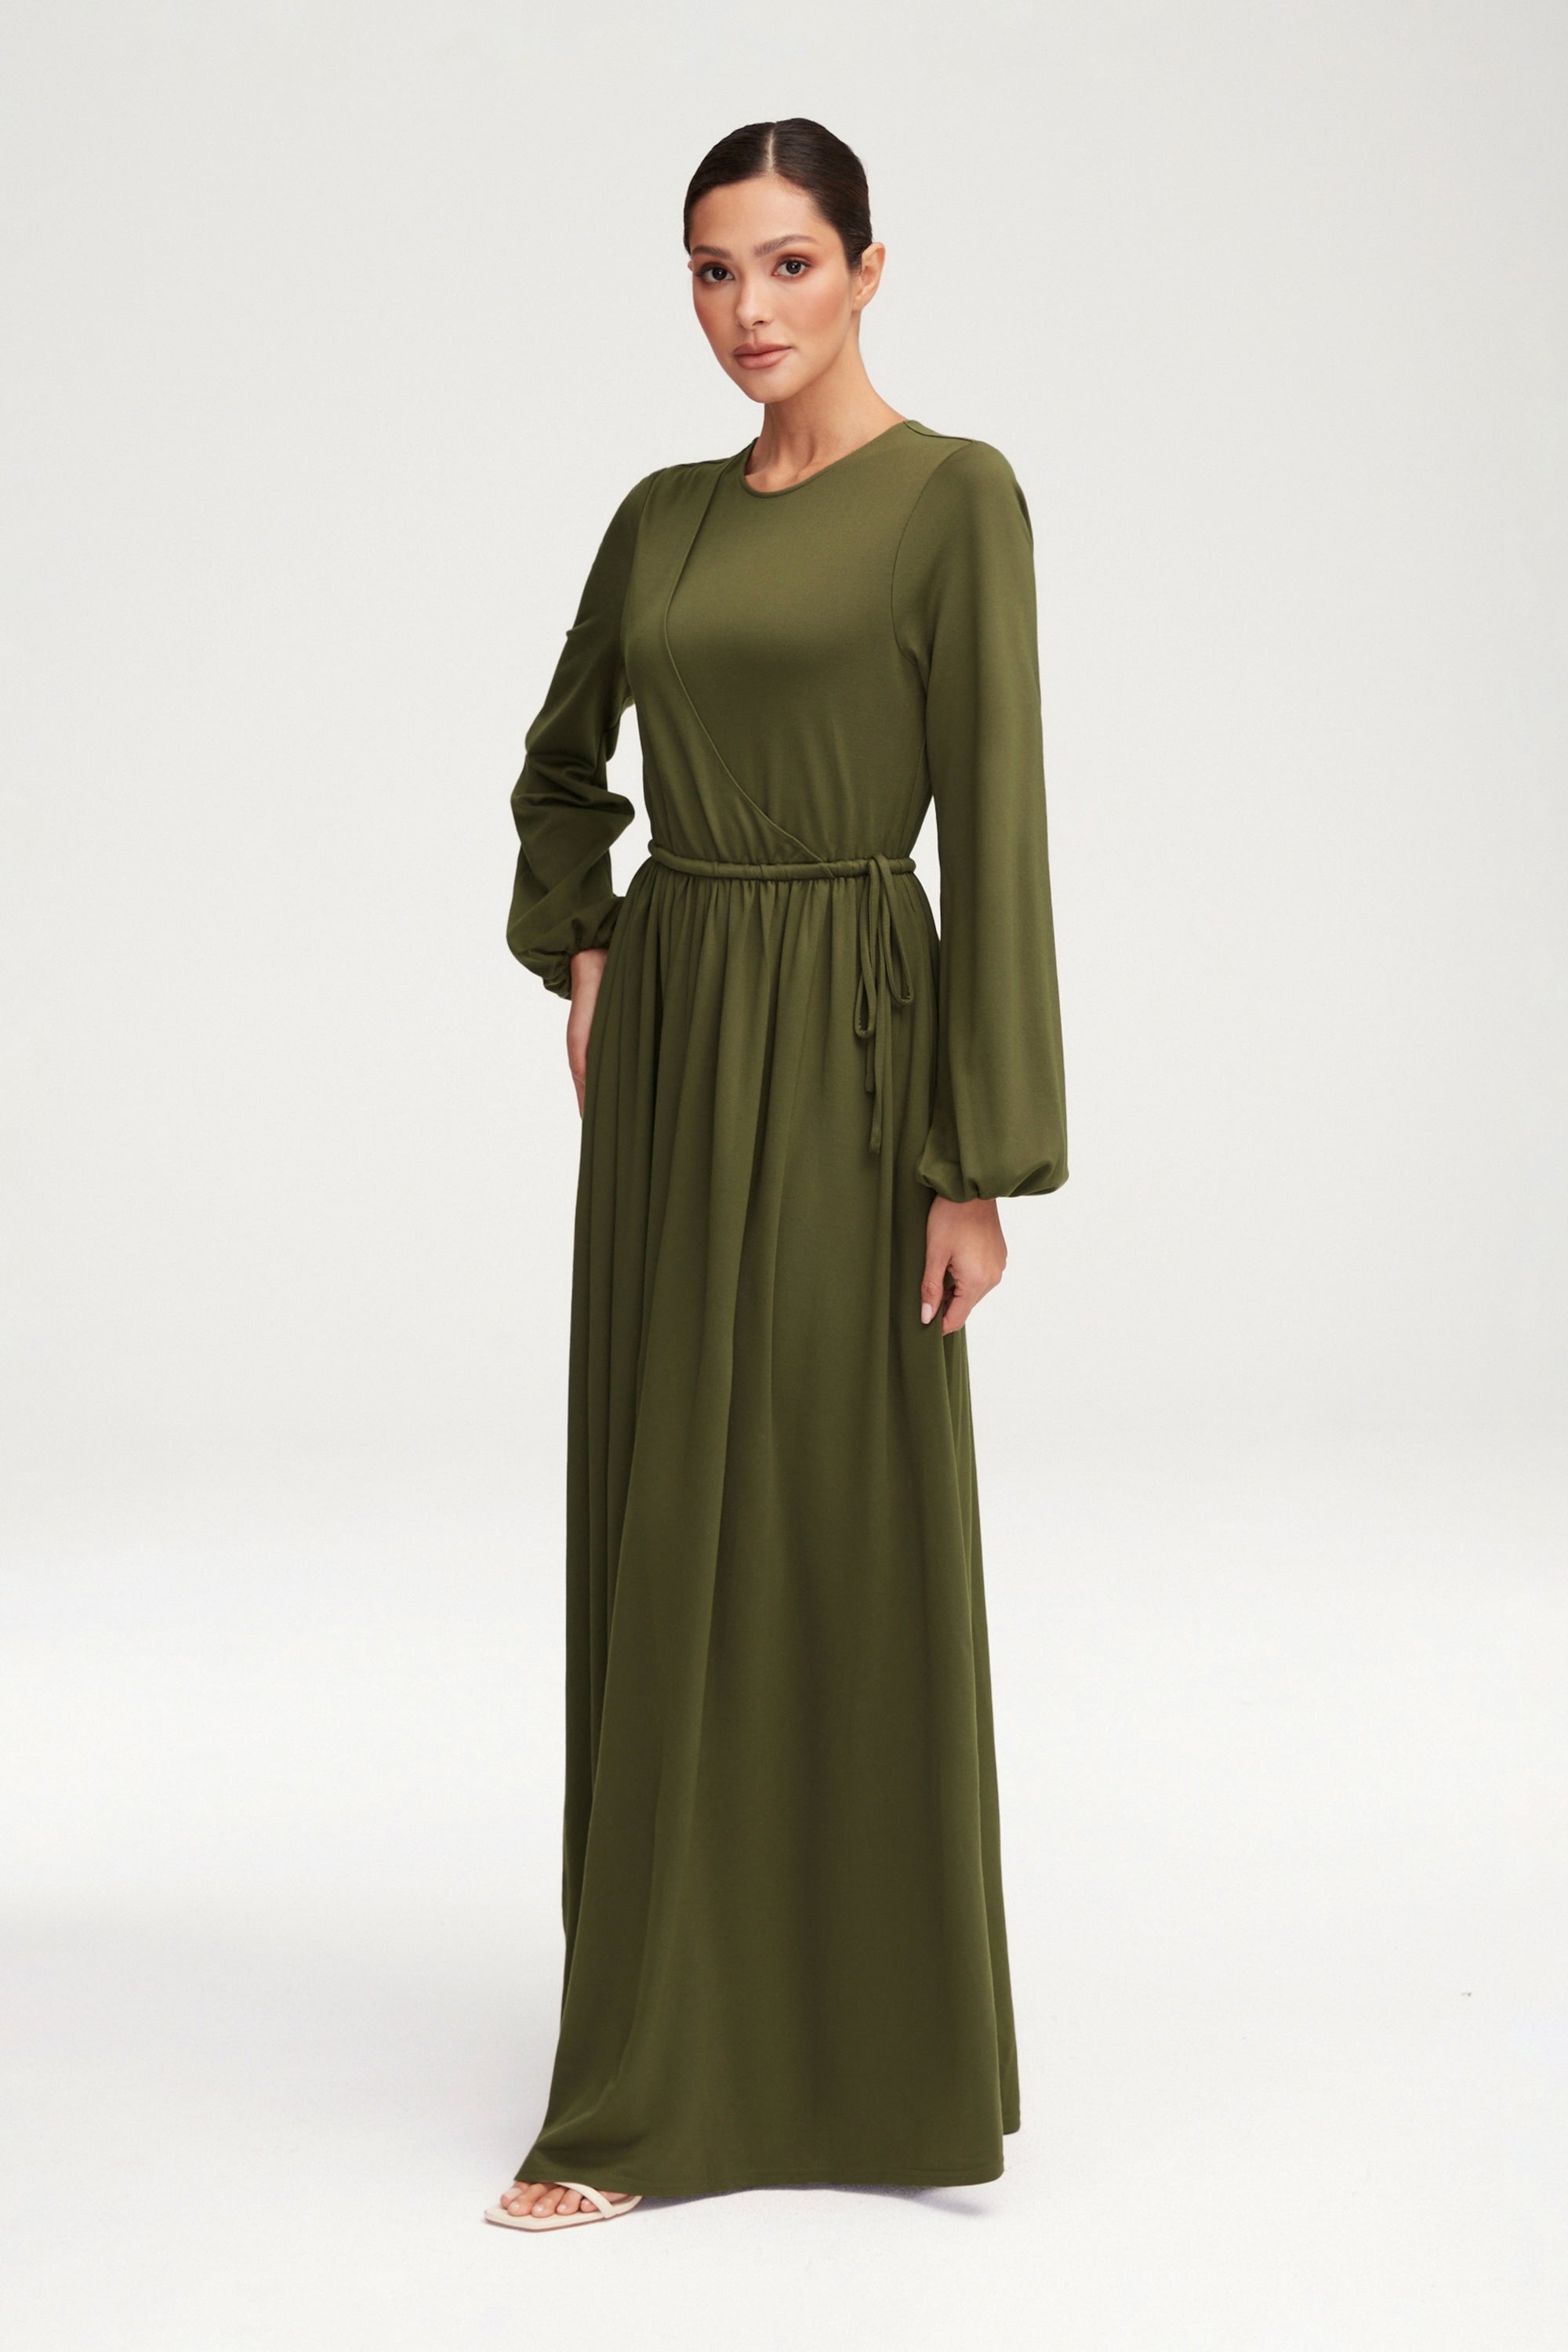 Emma Jersey Elastic Waist Maxi Dress - Khaki Green Clothing epschoolboard 